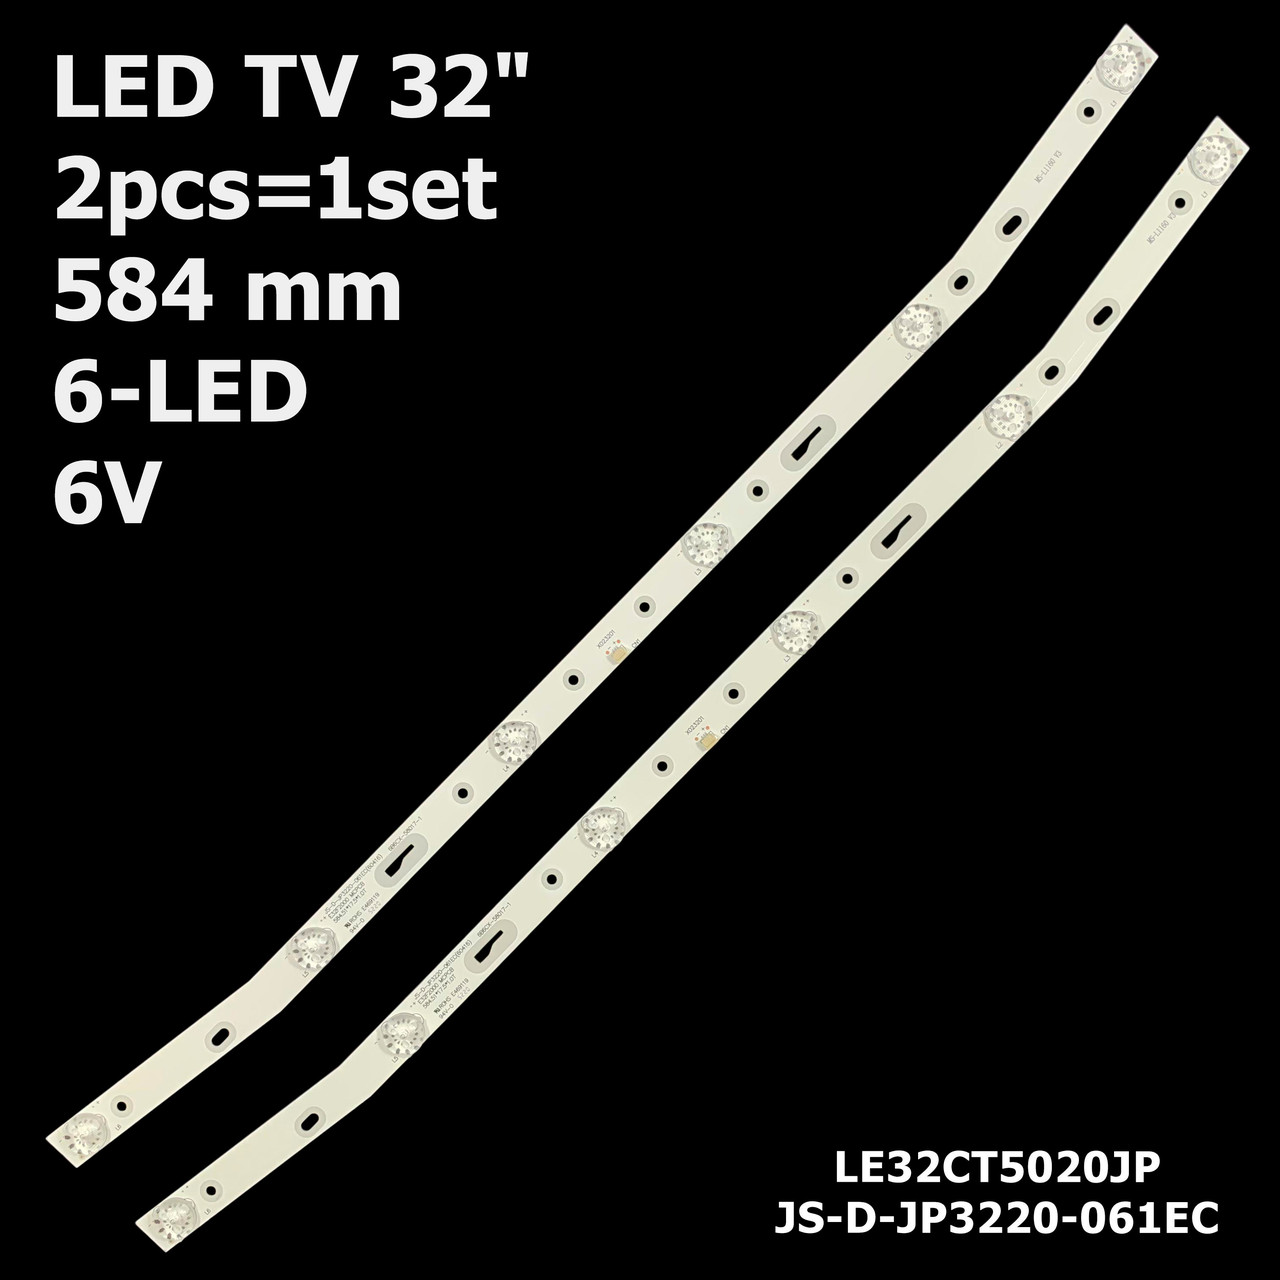 LED підсвітка TV 32" JS-D-JP3220-061EC V320BJ7-PE1 AKAI E32F2000 LED32HD340 AKTV3212 AKTV3216 AKTV322 1шт., фото 1